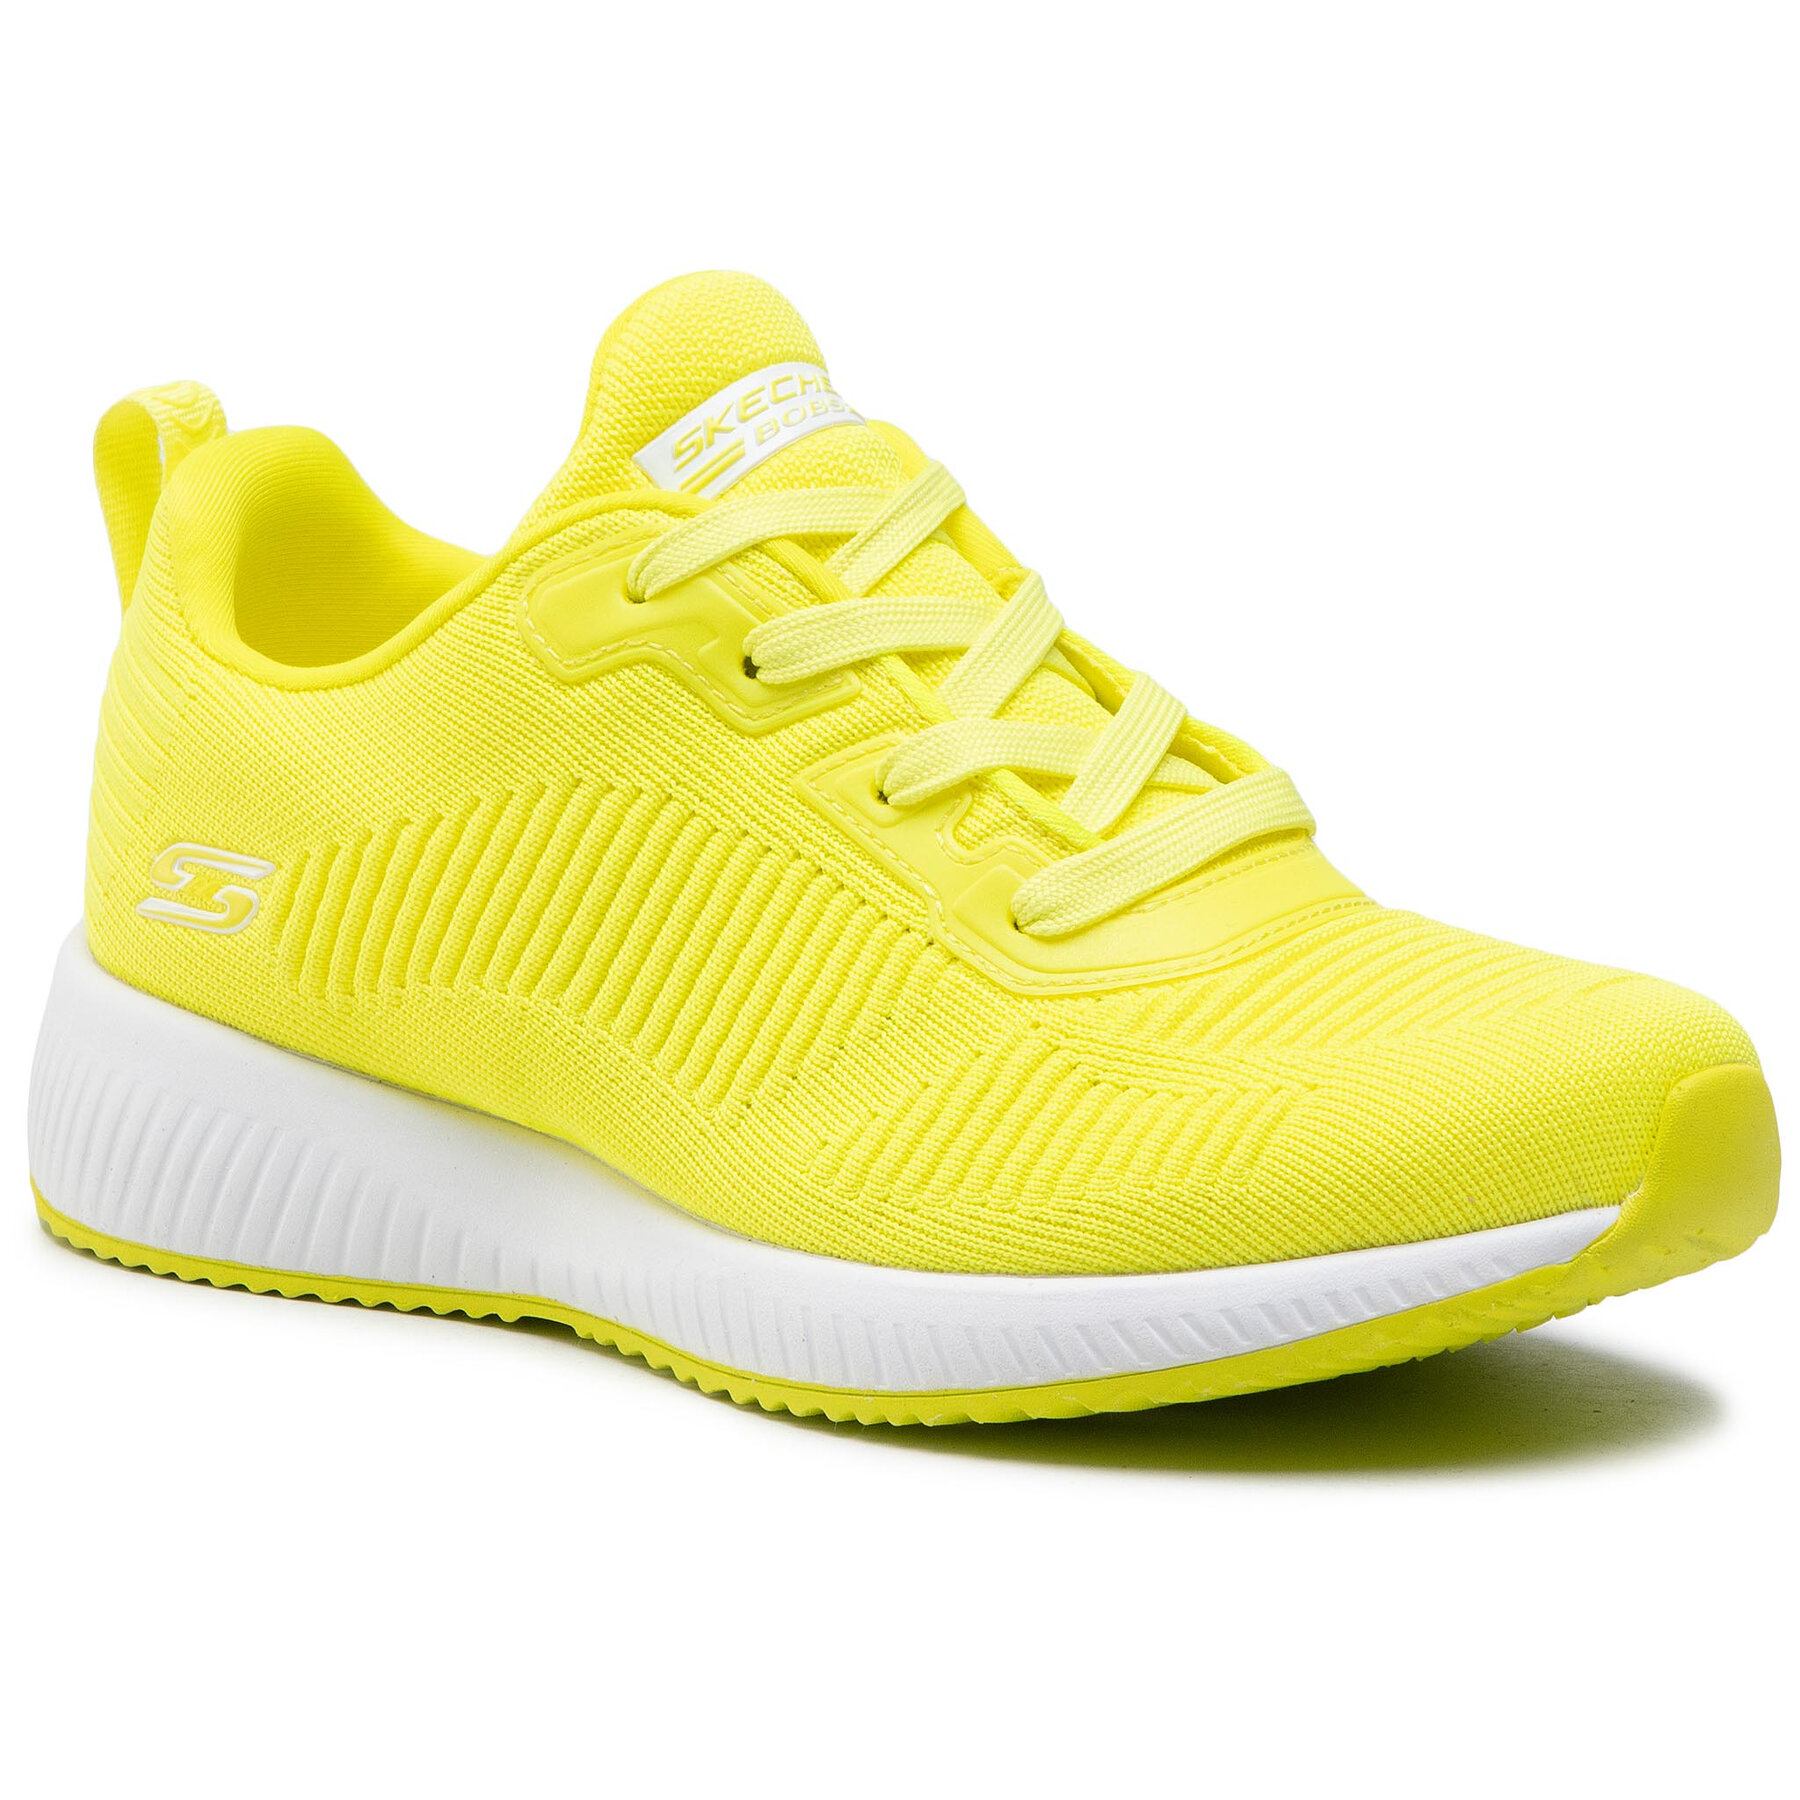 Čevlji Skechers Glowrider 33162/NYEL Neon/Yellow